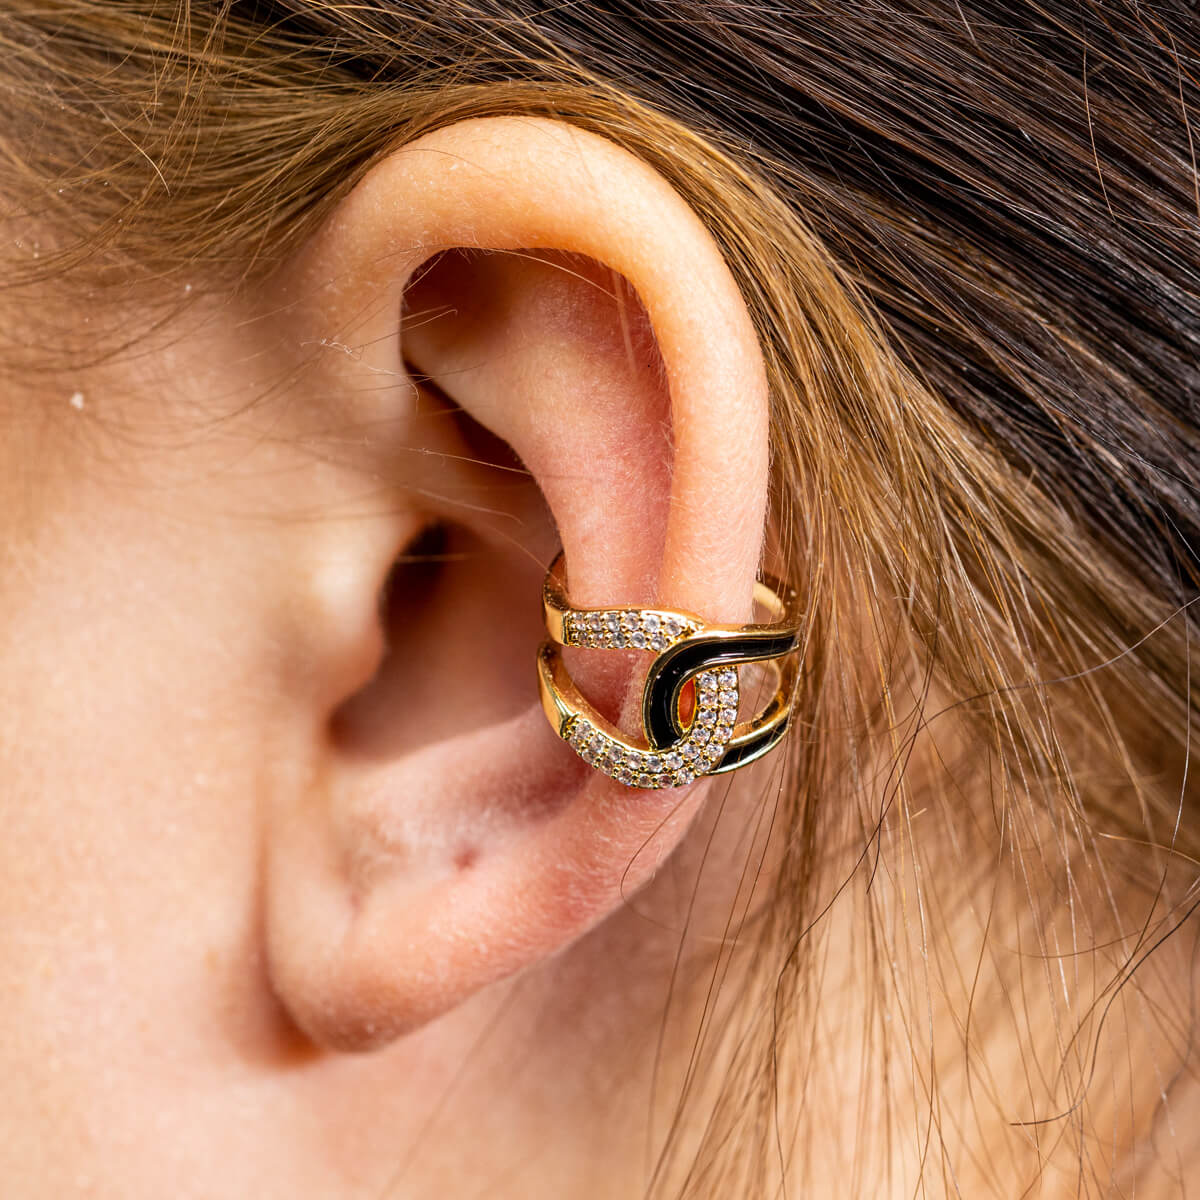 Zirconia rustic earring ear cuff 1pc